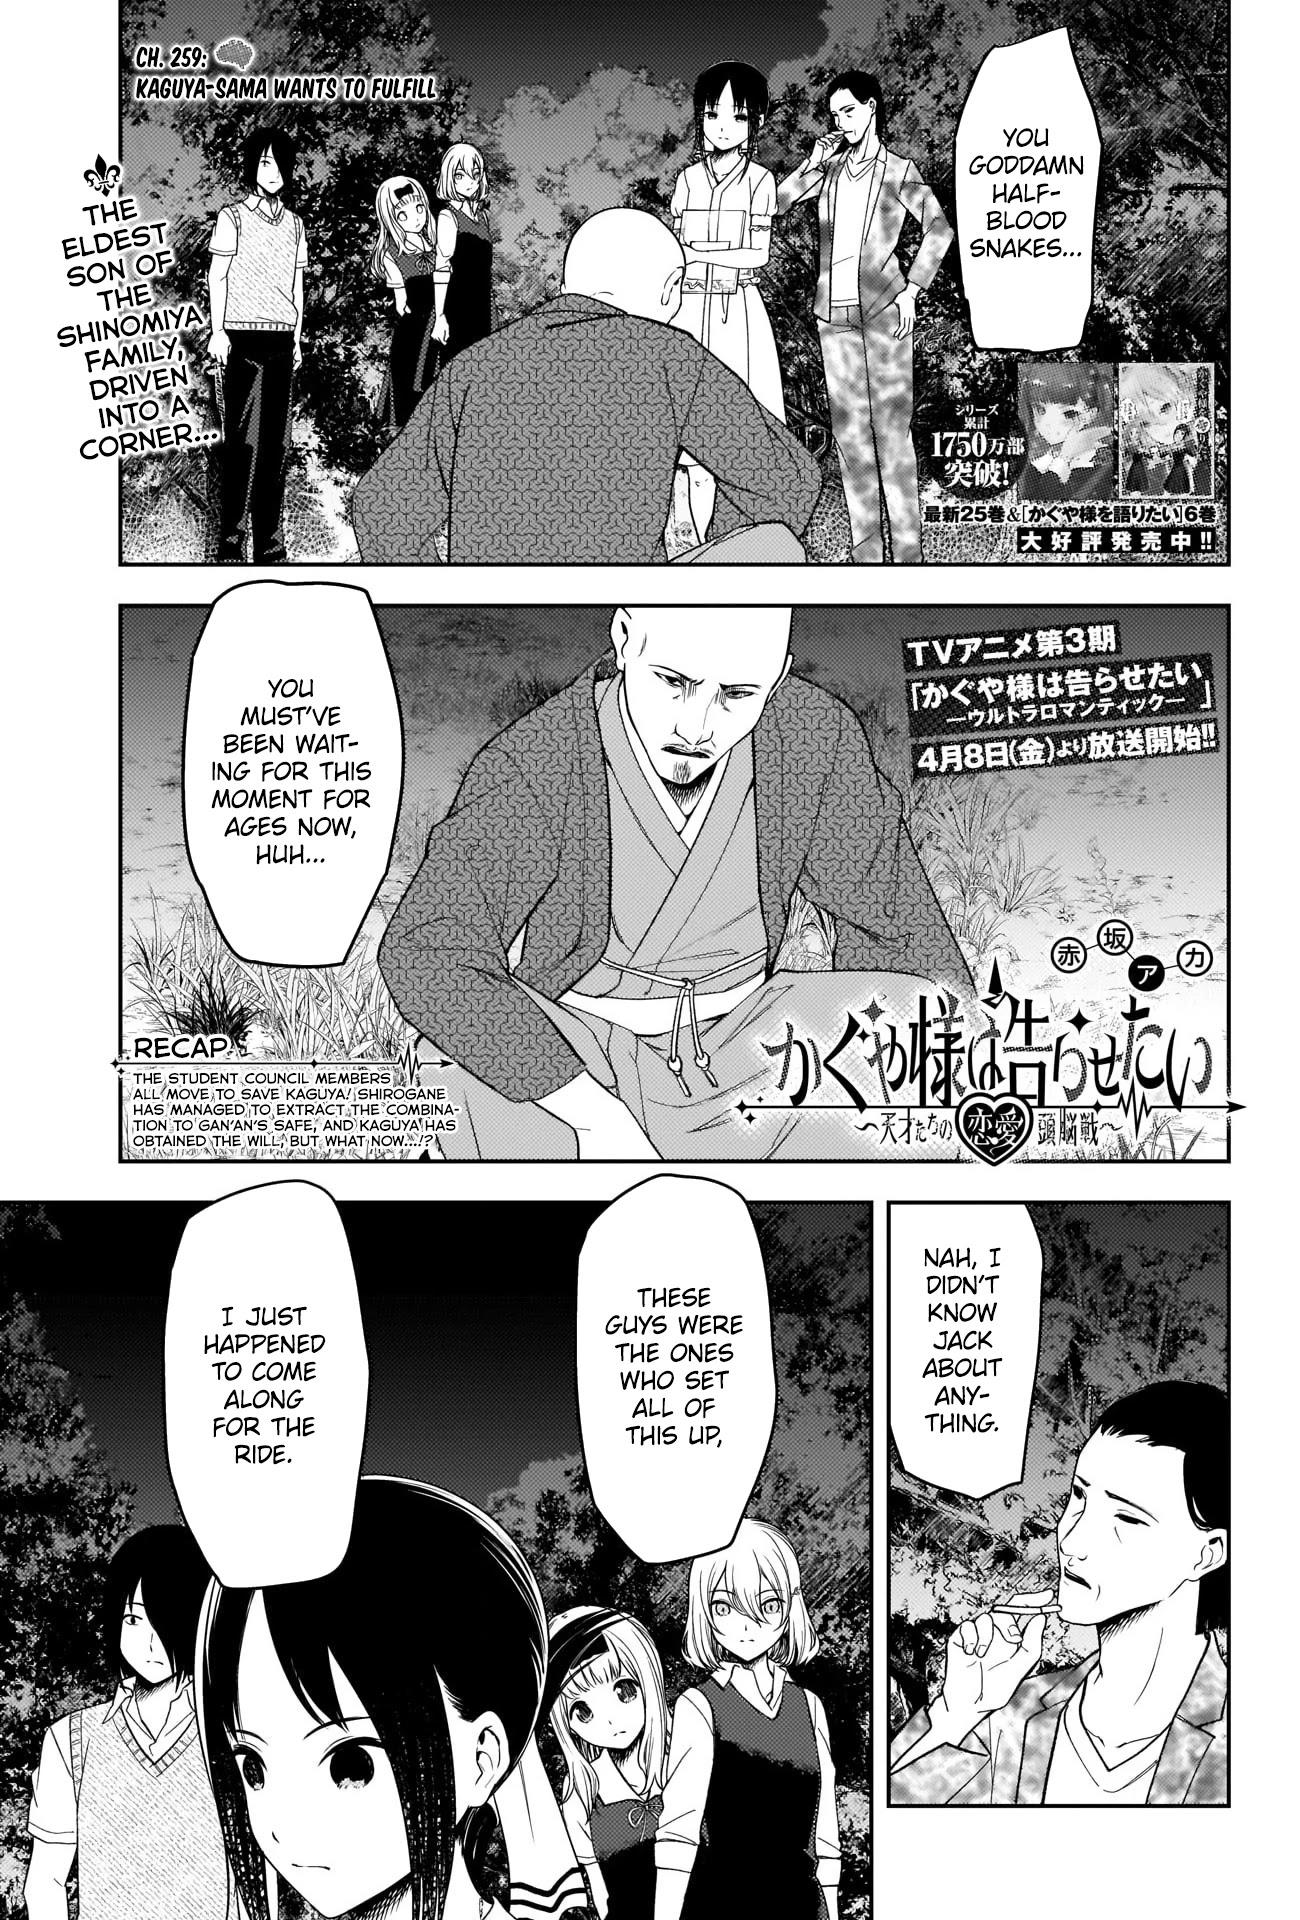 Read Kaguya-Sama Wa Kokurasetai - Tensai-Tachi No Renai Zunousen Chapter  212.5: Extra: S2 Bd Special Booklet Manga Extras on Mangakakalot